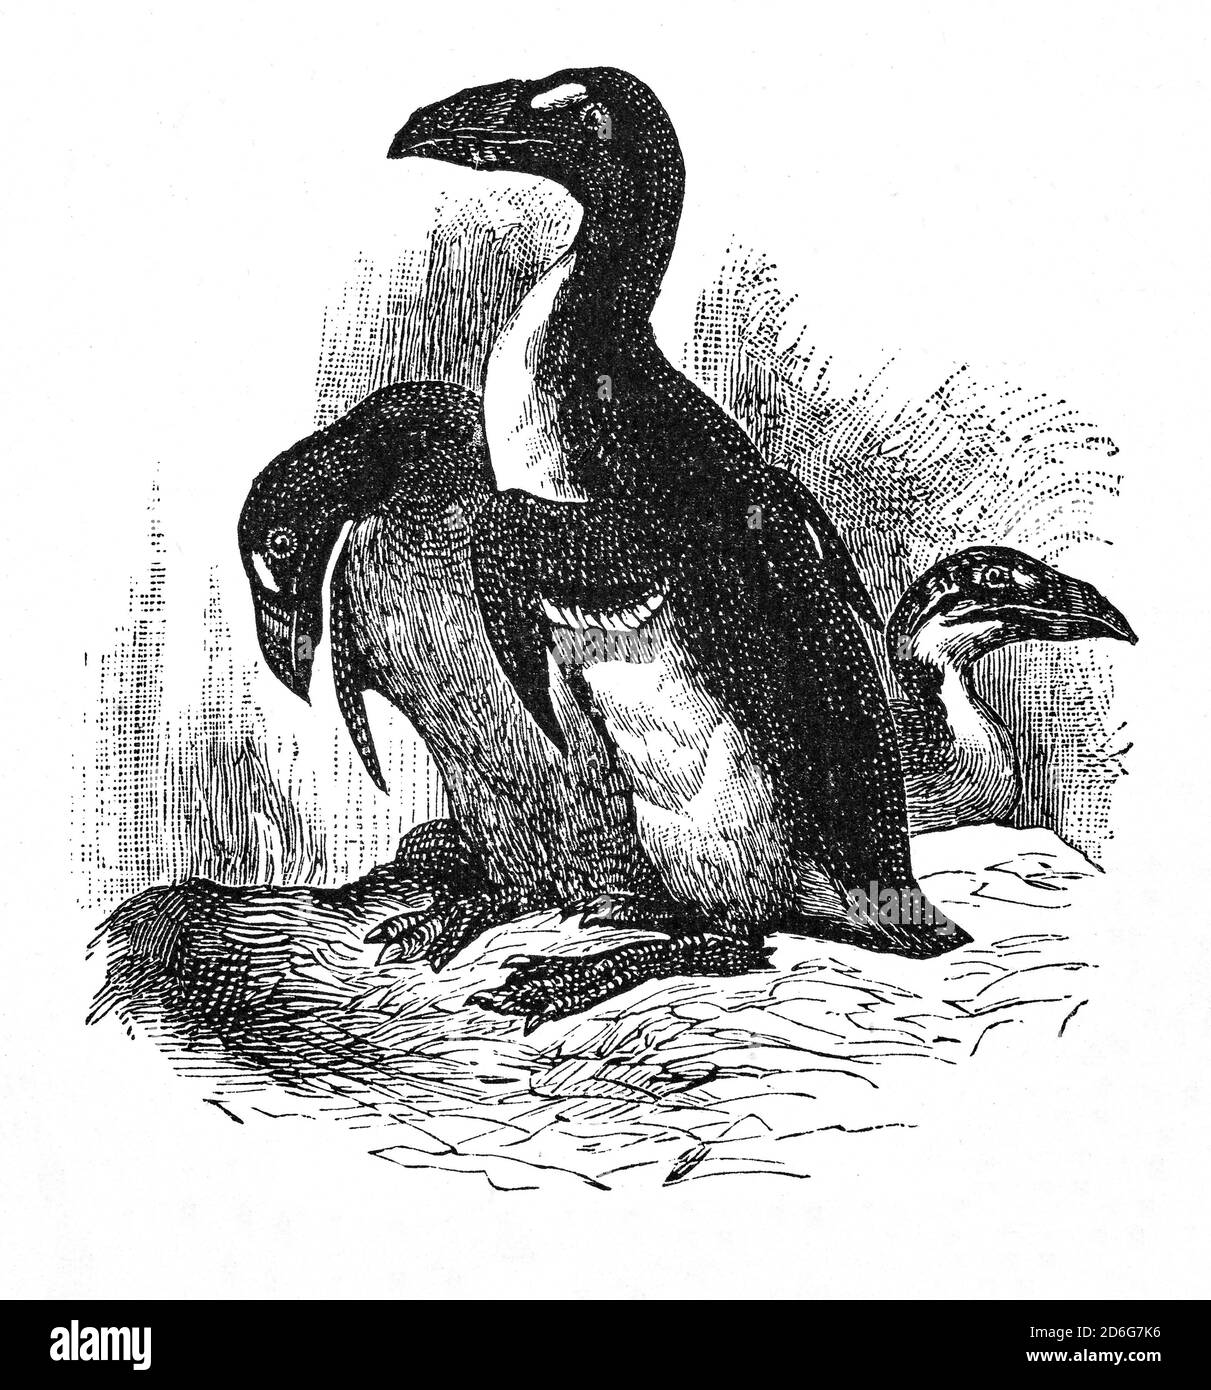 Eine Illustration des Großen Auks (Pinguinus impennis) aus dem späten 19. Jahrhundert, einem flugunfreien Vogel, der Mitte des 19. Jahrhunderts ausgestorben wurde. Auf felsigen, isolierten Inseln brüten frühe europäische Forscher, die die große Auk als praktische Nahrungsquelle nutzten, und die Vogelflaube war in Europa sehr gefragt. Wissenschaftler erkannten, dass die große Auk verschwand und sie wurde der Nutznießer vieler früher Umweltgesetze, aber dies erwies sich als unwirksam. Die letzten beiden bestätigten Exemplare wurden am 3. Juni 1844 auf Eldey vor der Küste Islands getötet. Stockfoto